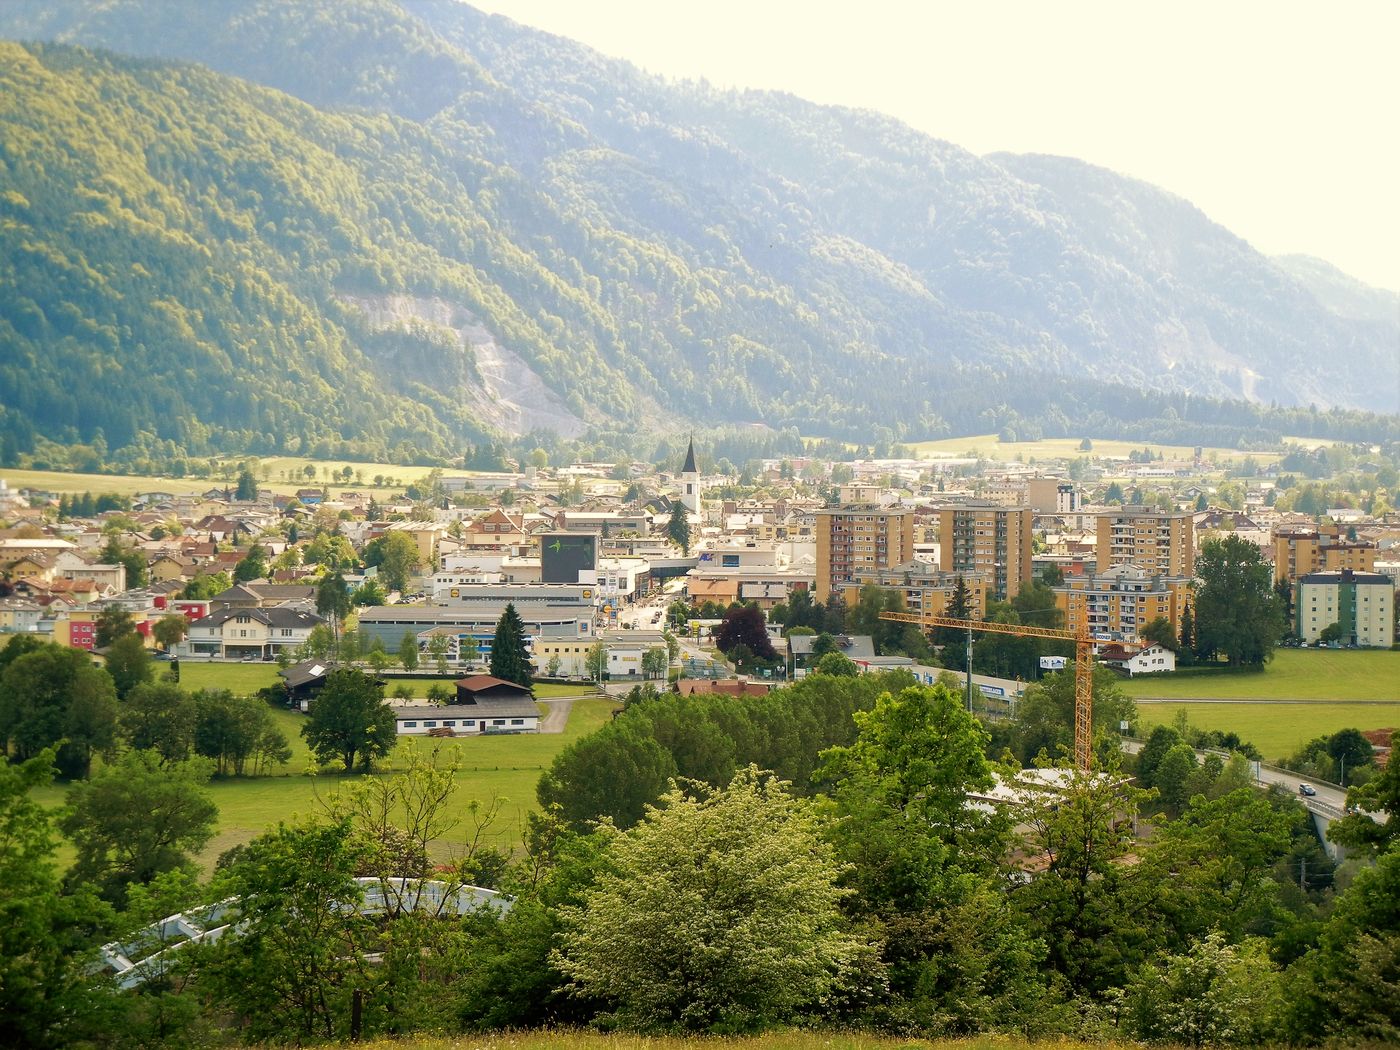 Wörgl: Poarta ta către minunile Tirolului